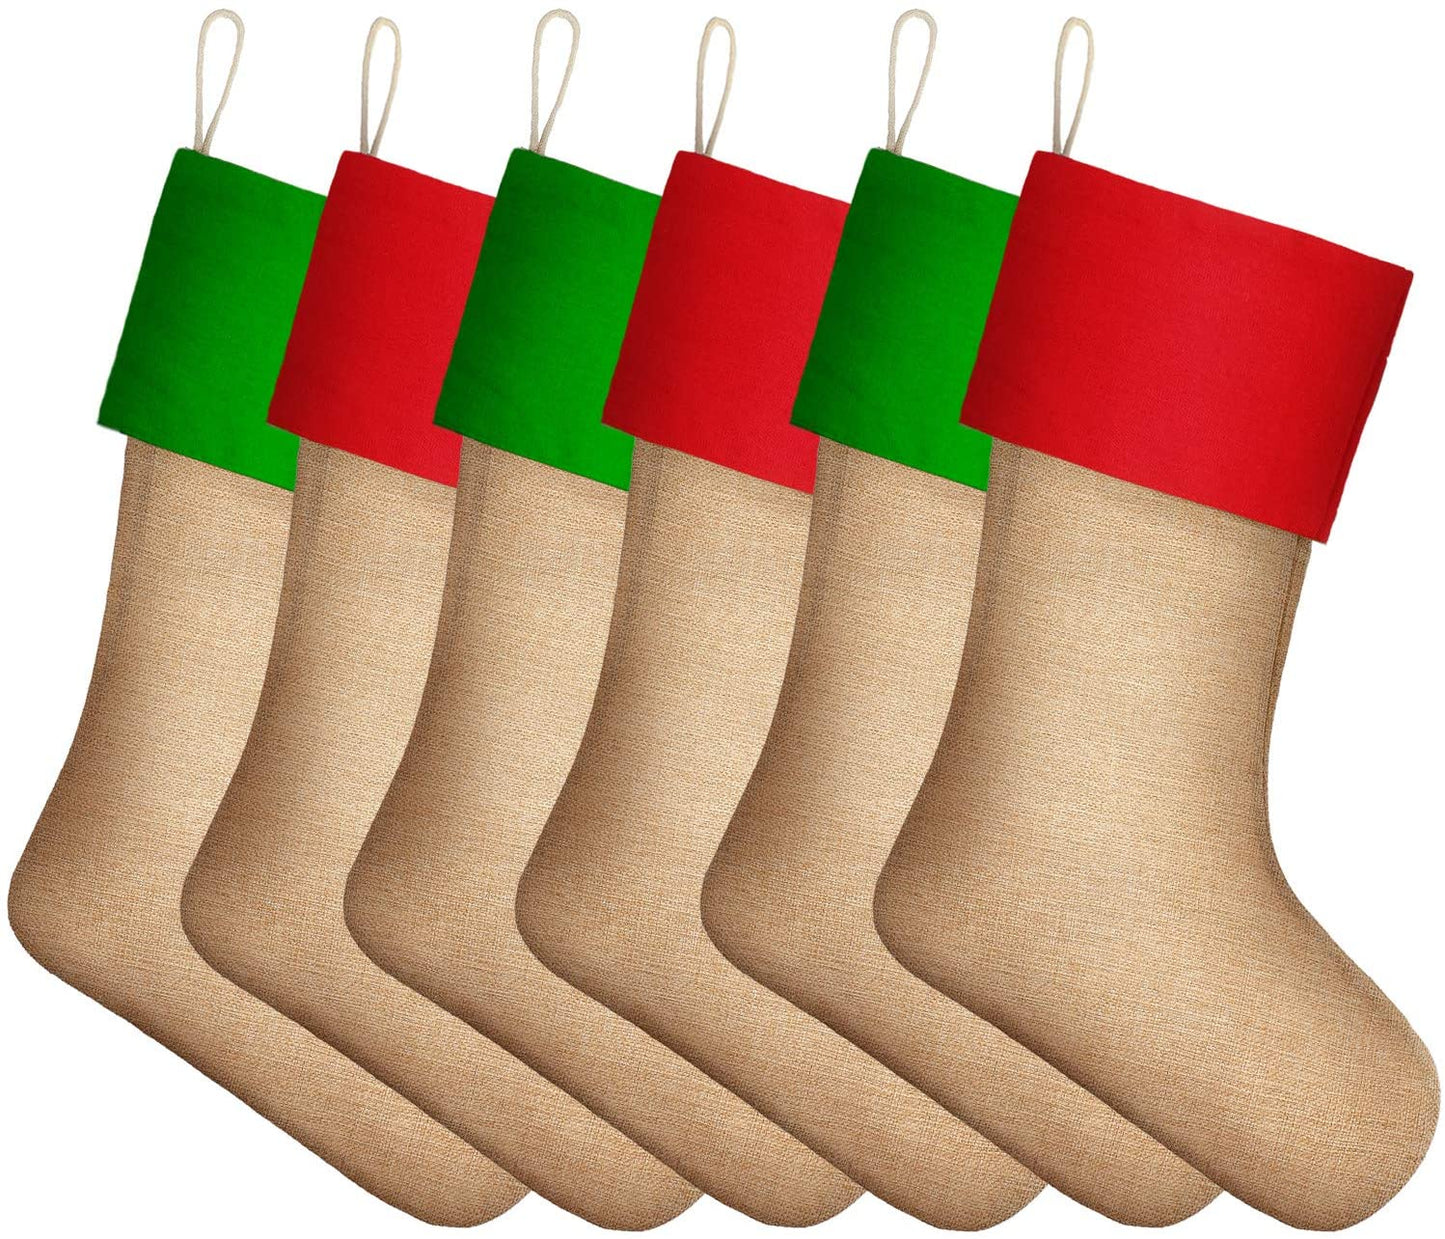 Blank Christmas Stockings